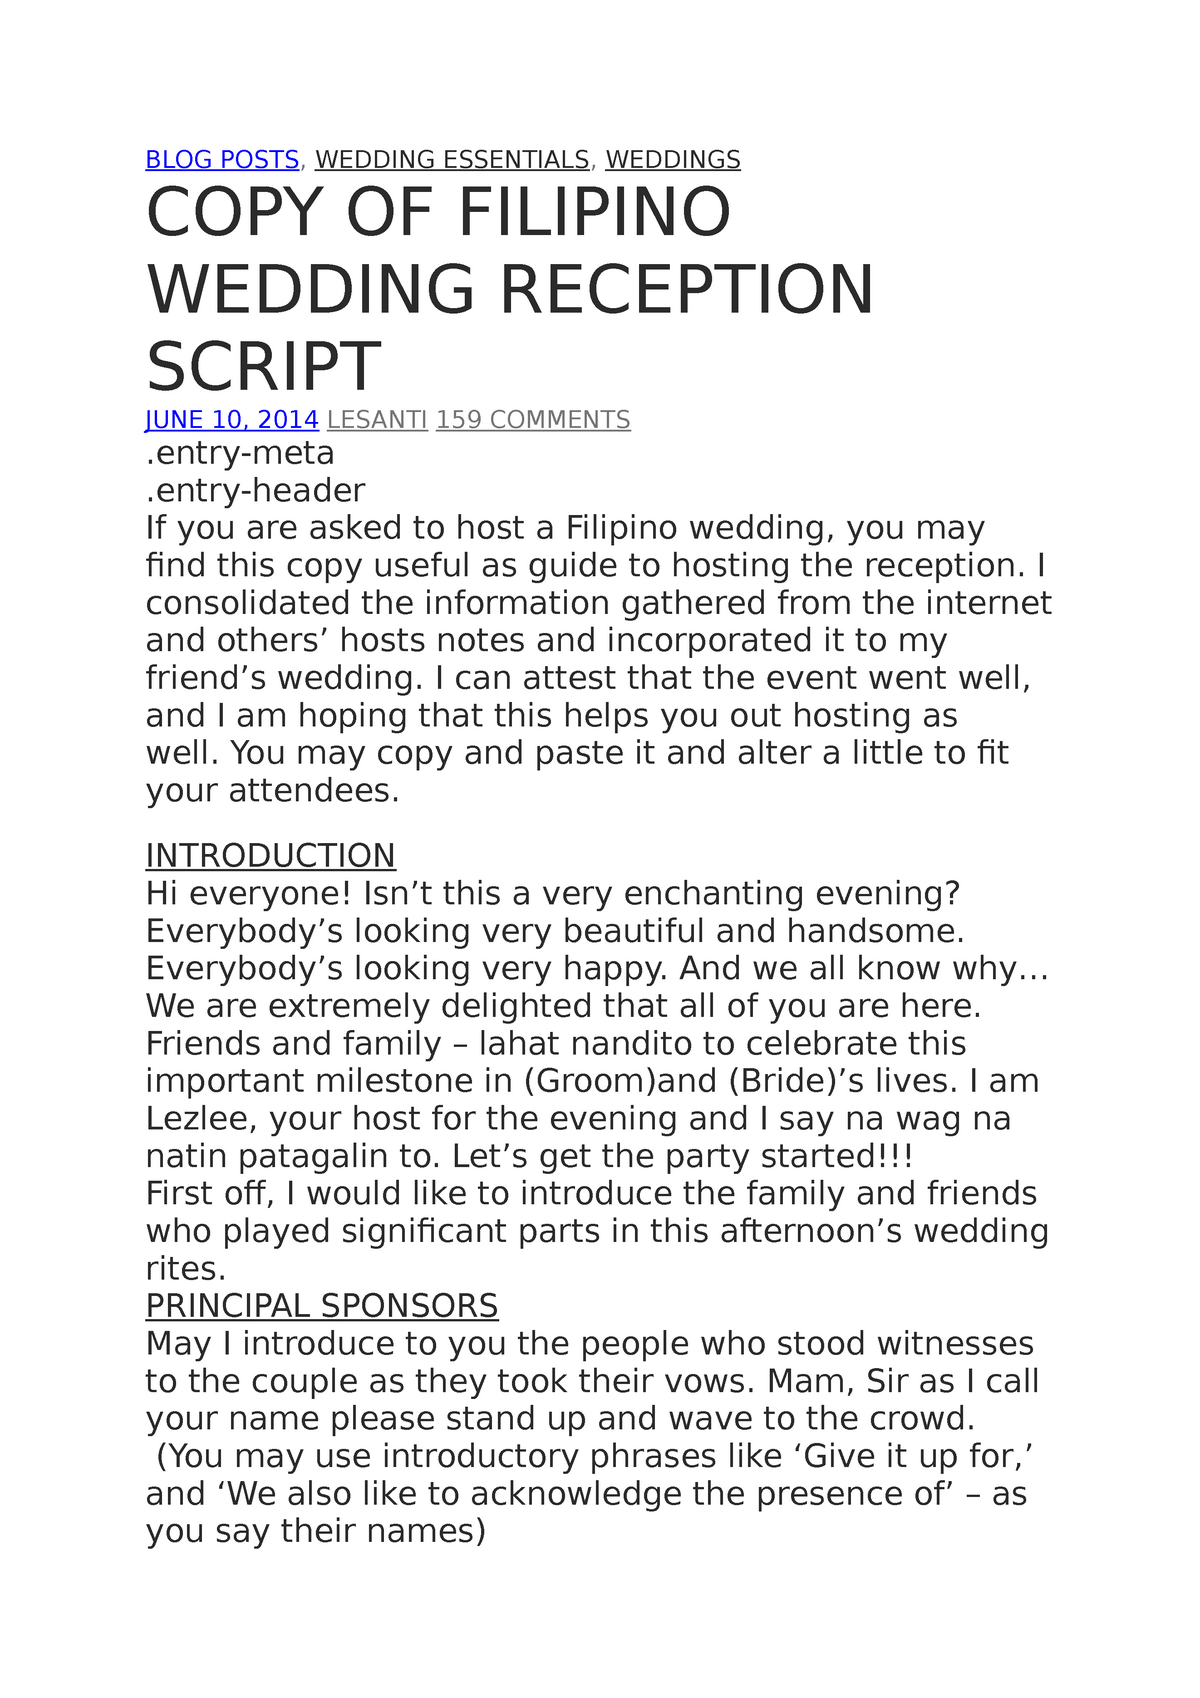 script for wedding emcee